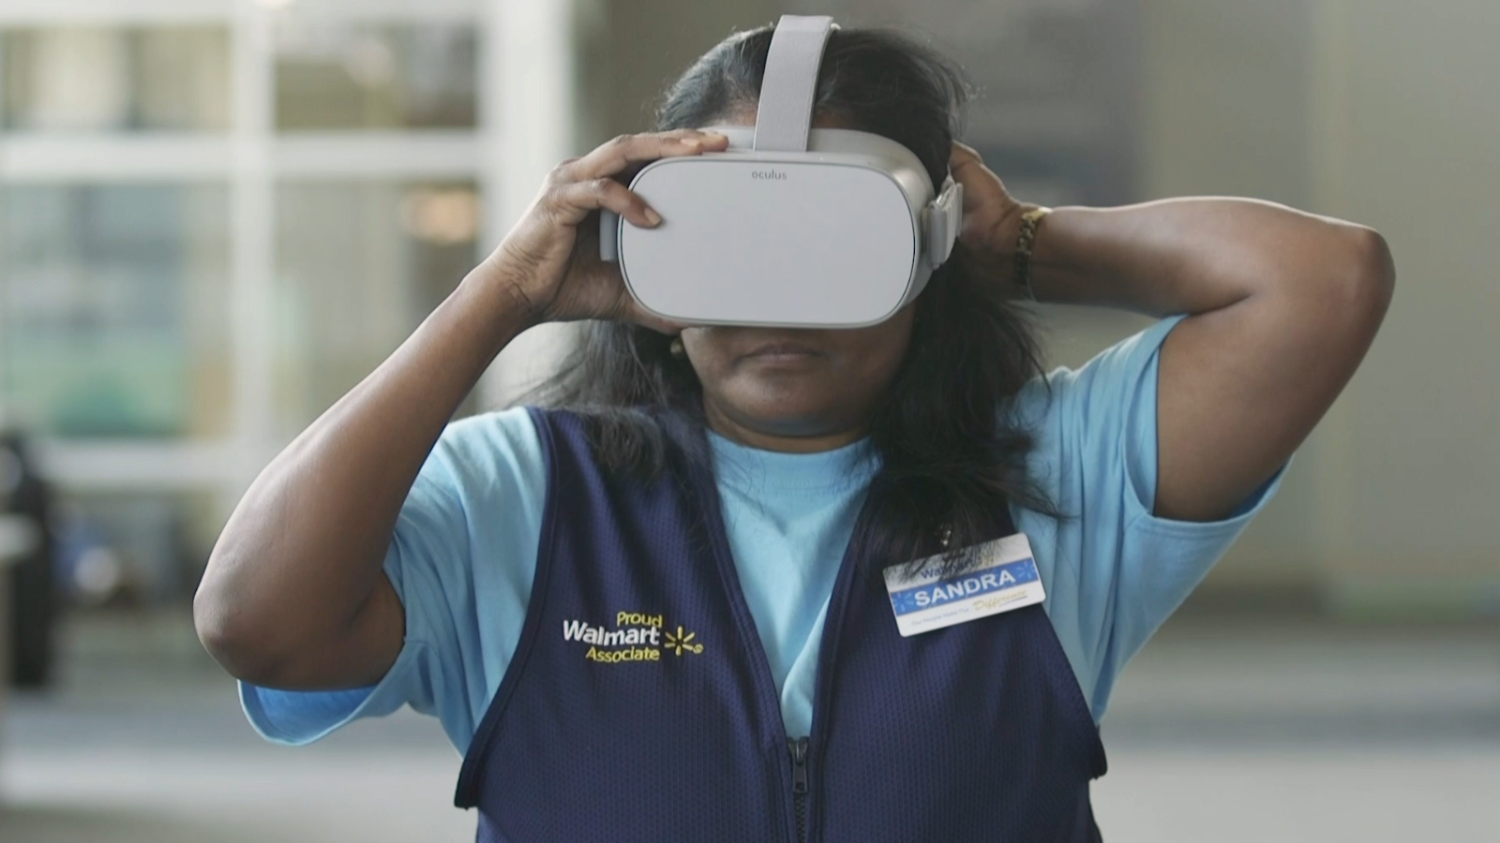 Associate Sandra puts on an Oculus VR Headset